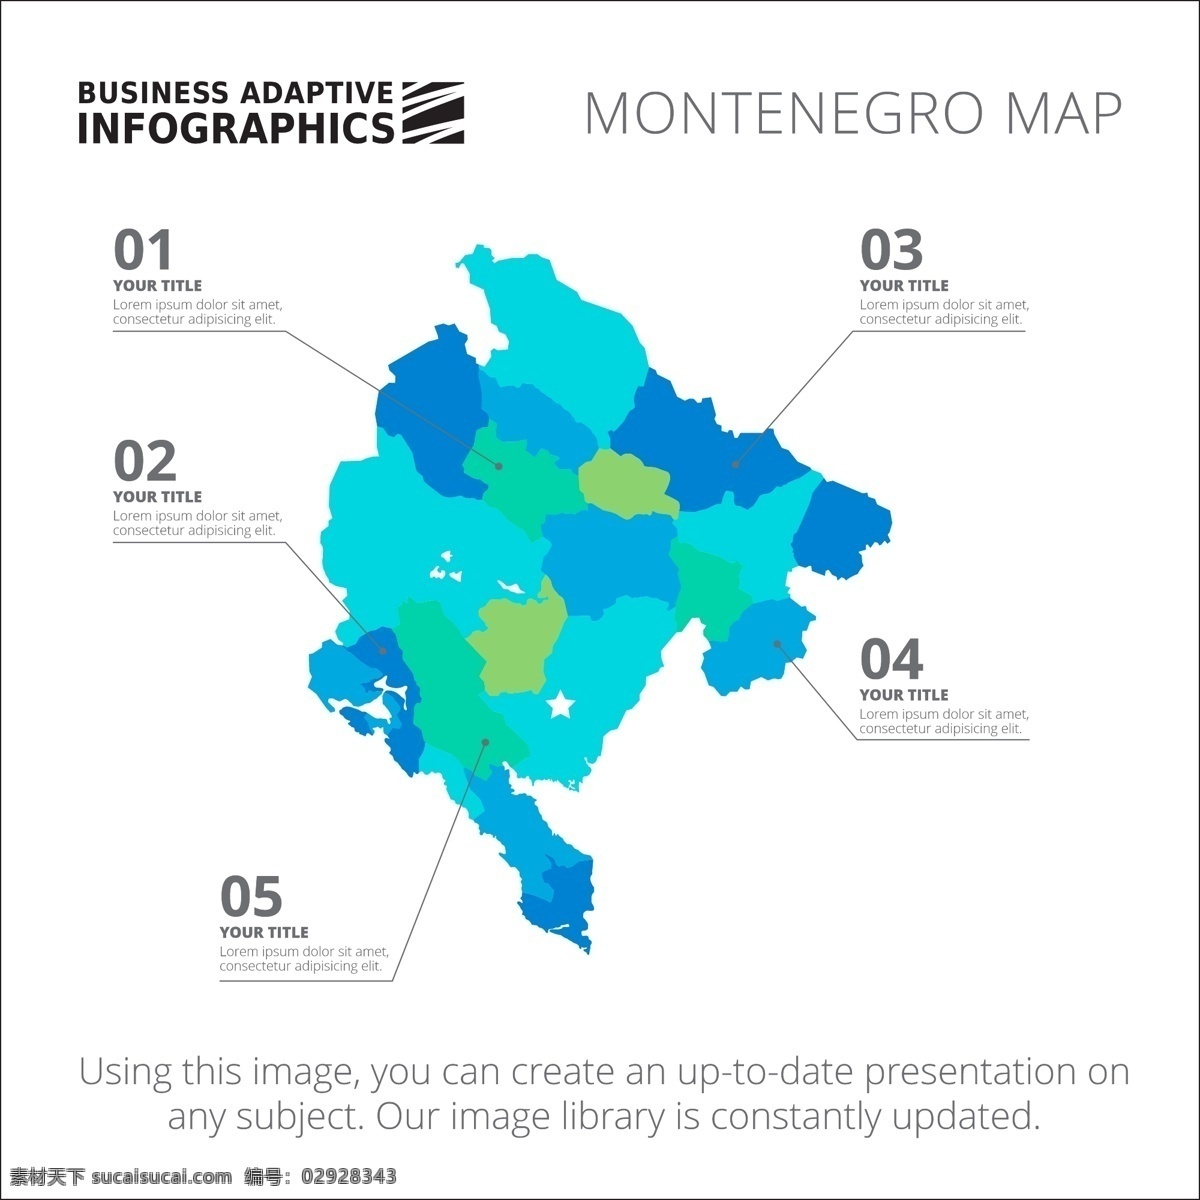 图表模板设计 图表 业务 地图 图形 模板 数字 信息 数据 要素 信息图表元素 色彩 商业图表 infography 图表模板 图形元素